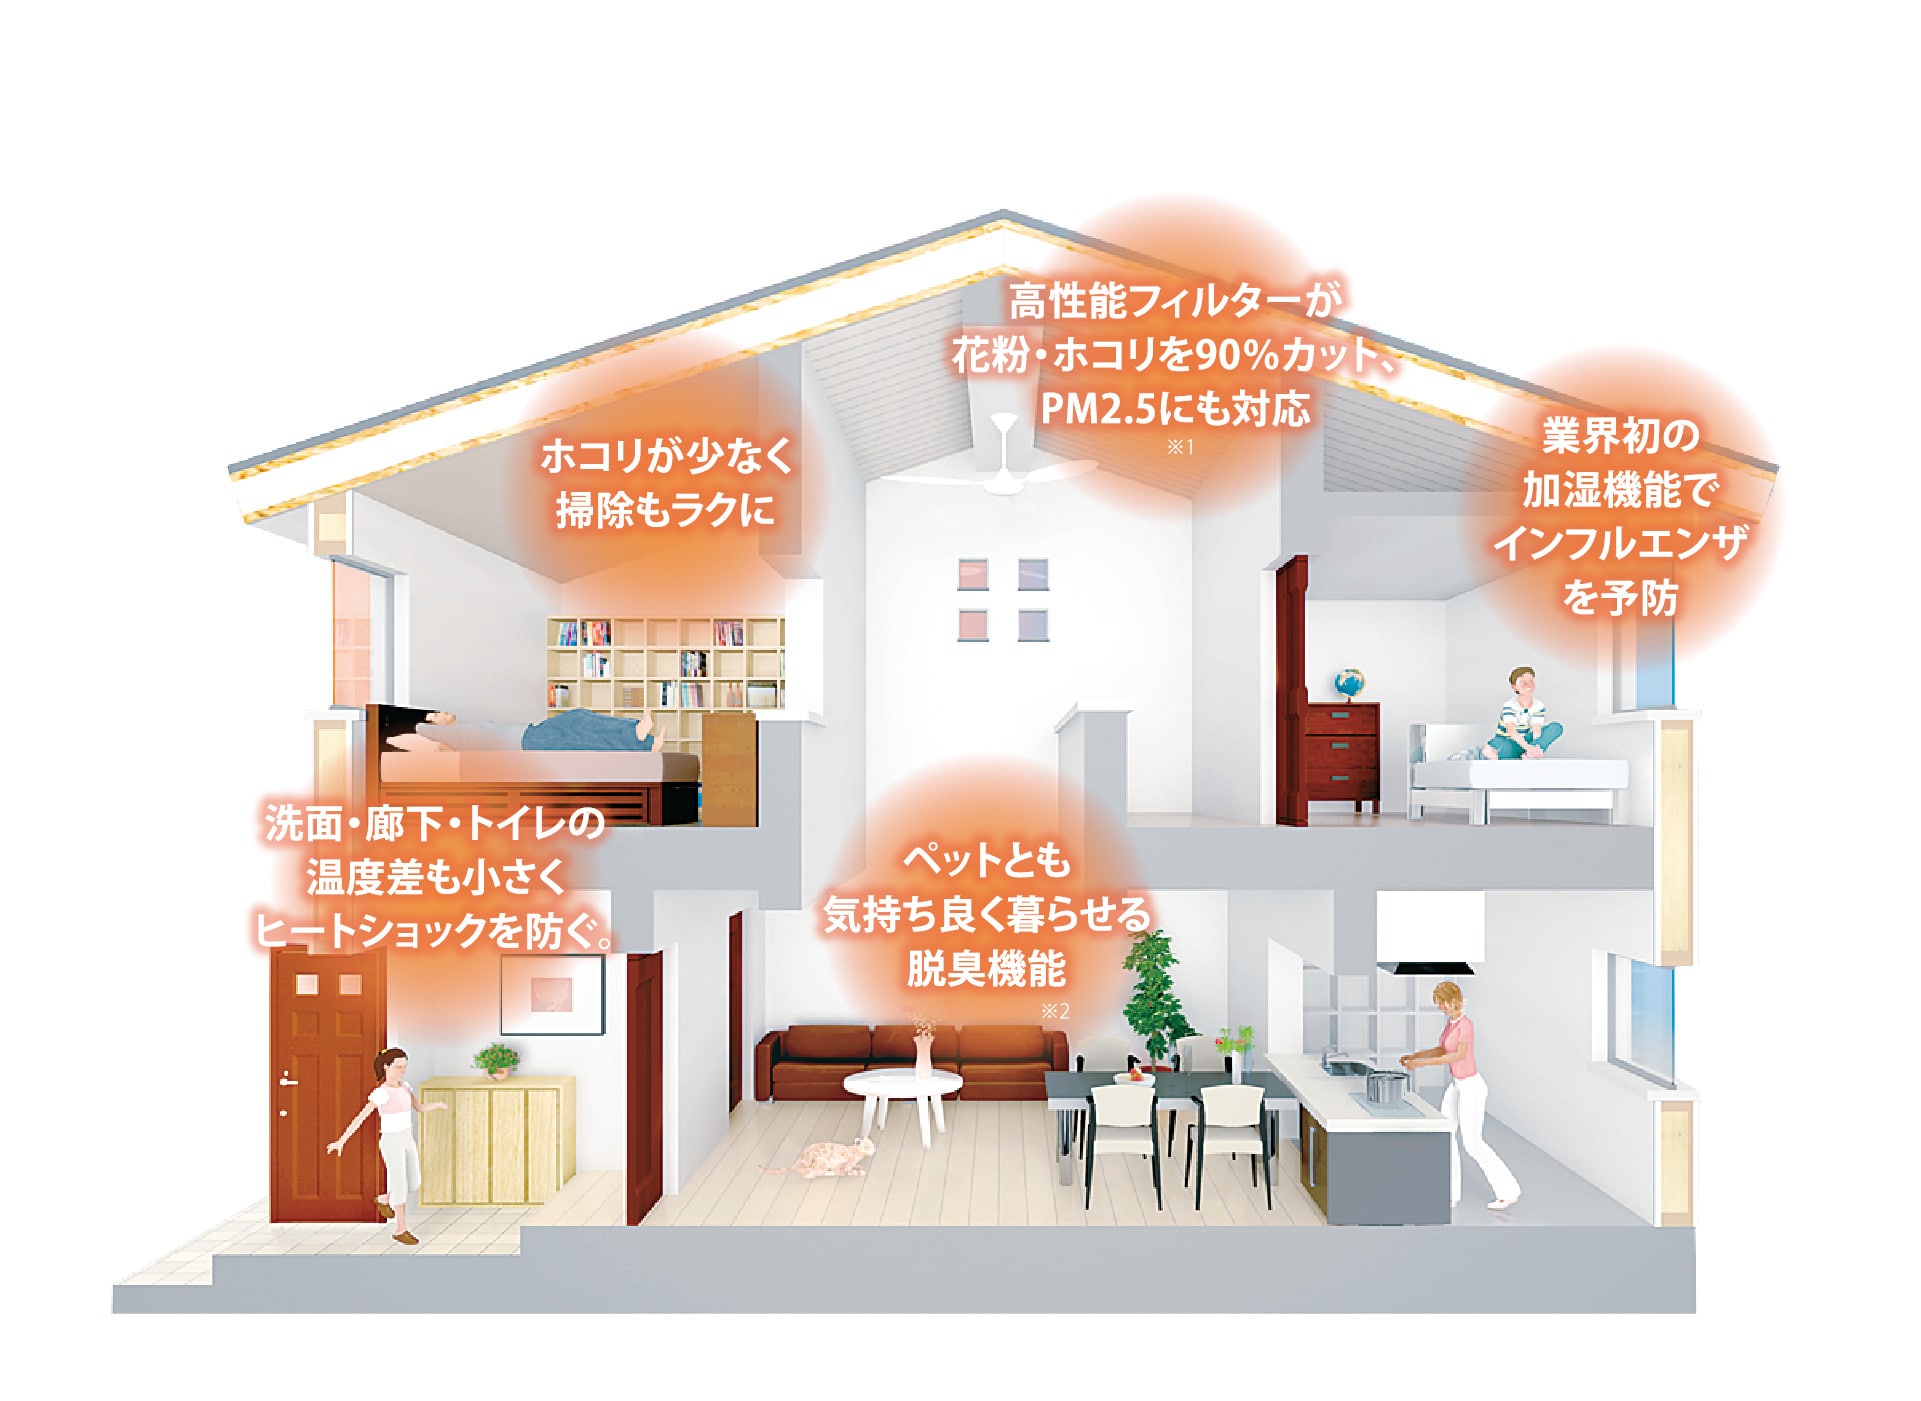 三井ホームの新空調システム「スマートブリーズ」の家の画像